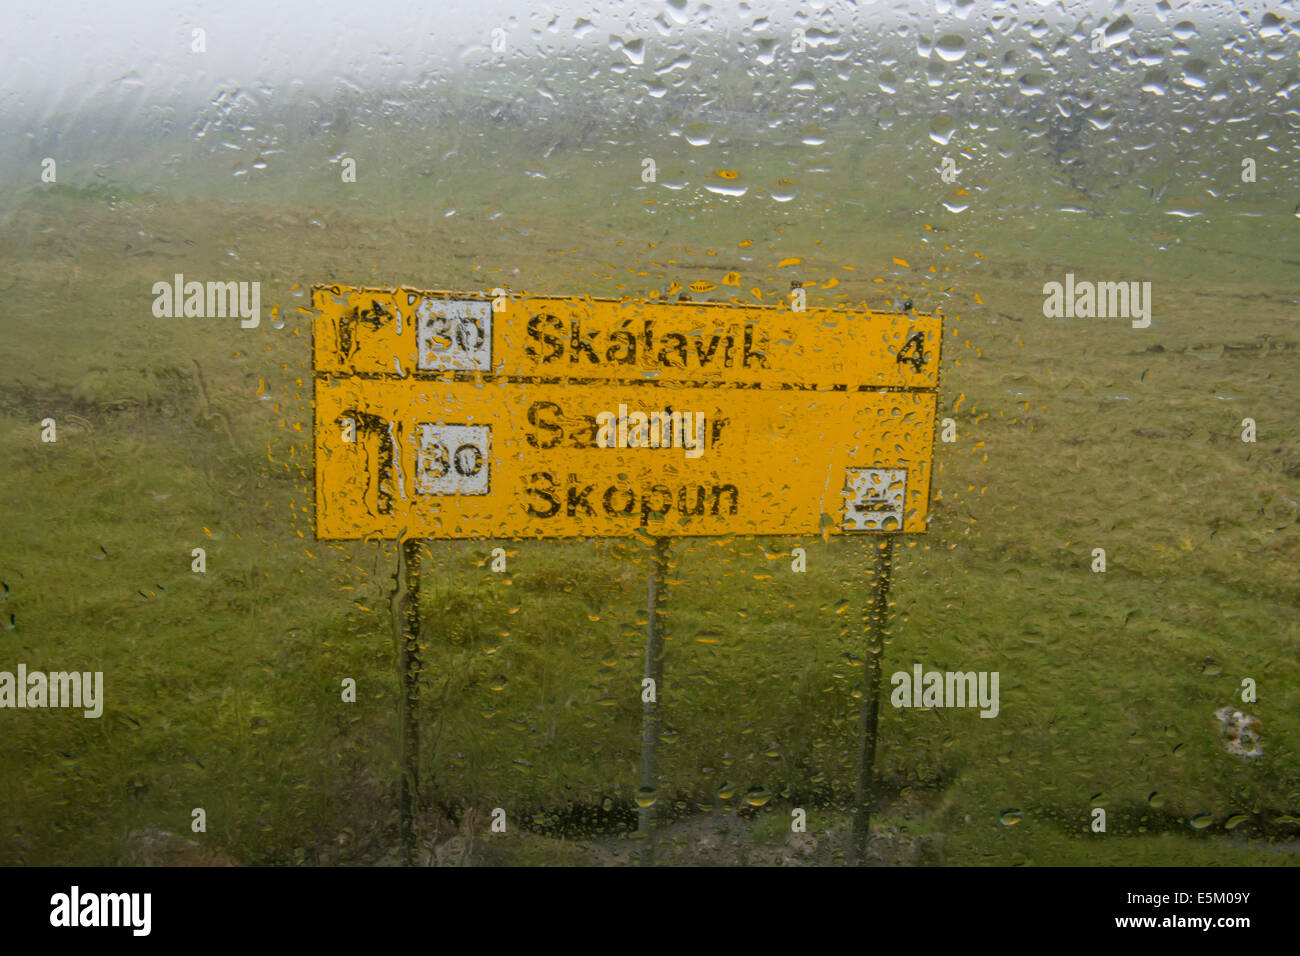 Regen auf der Windschutzscheibe, Wegweiser, Sandoy, Färöer Inseln, Dänemark Stockfoto